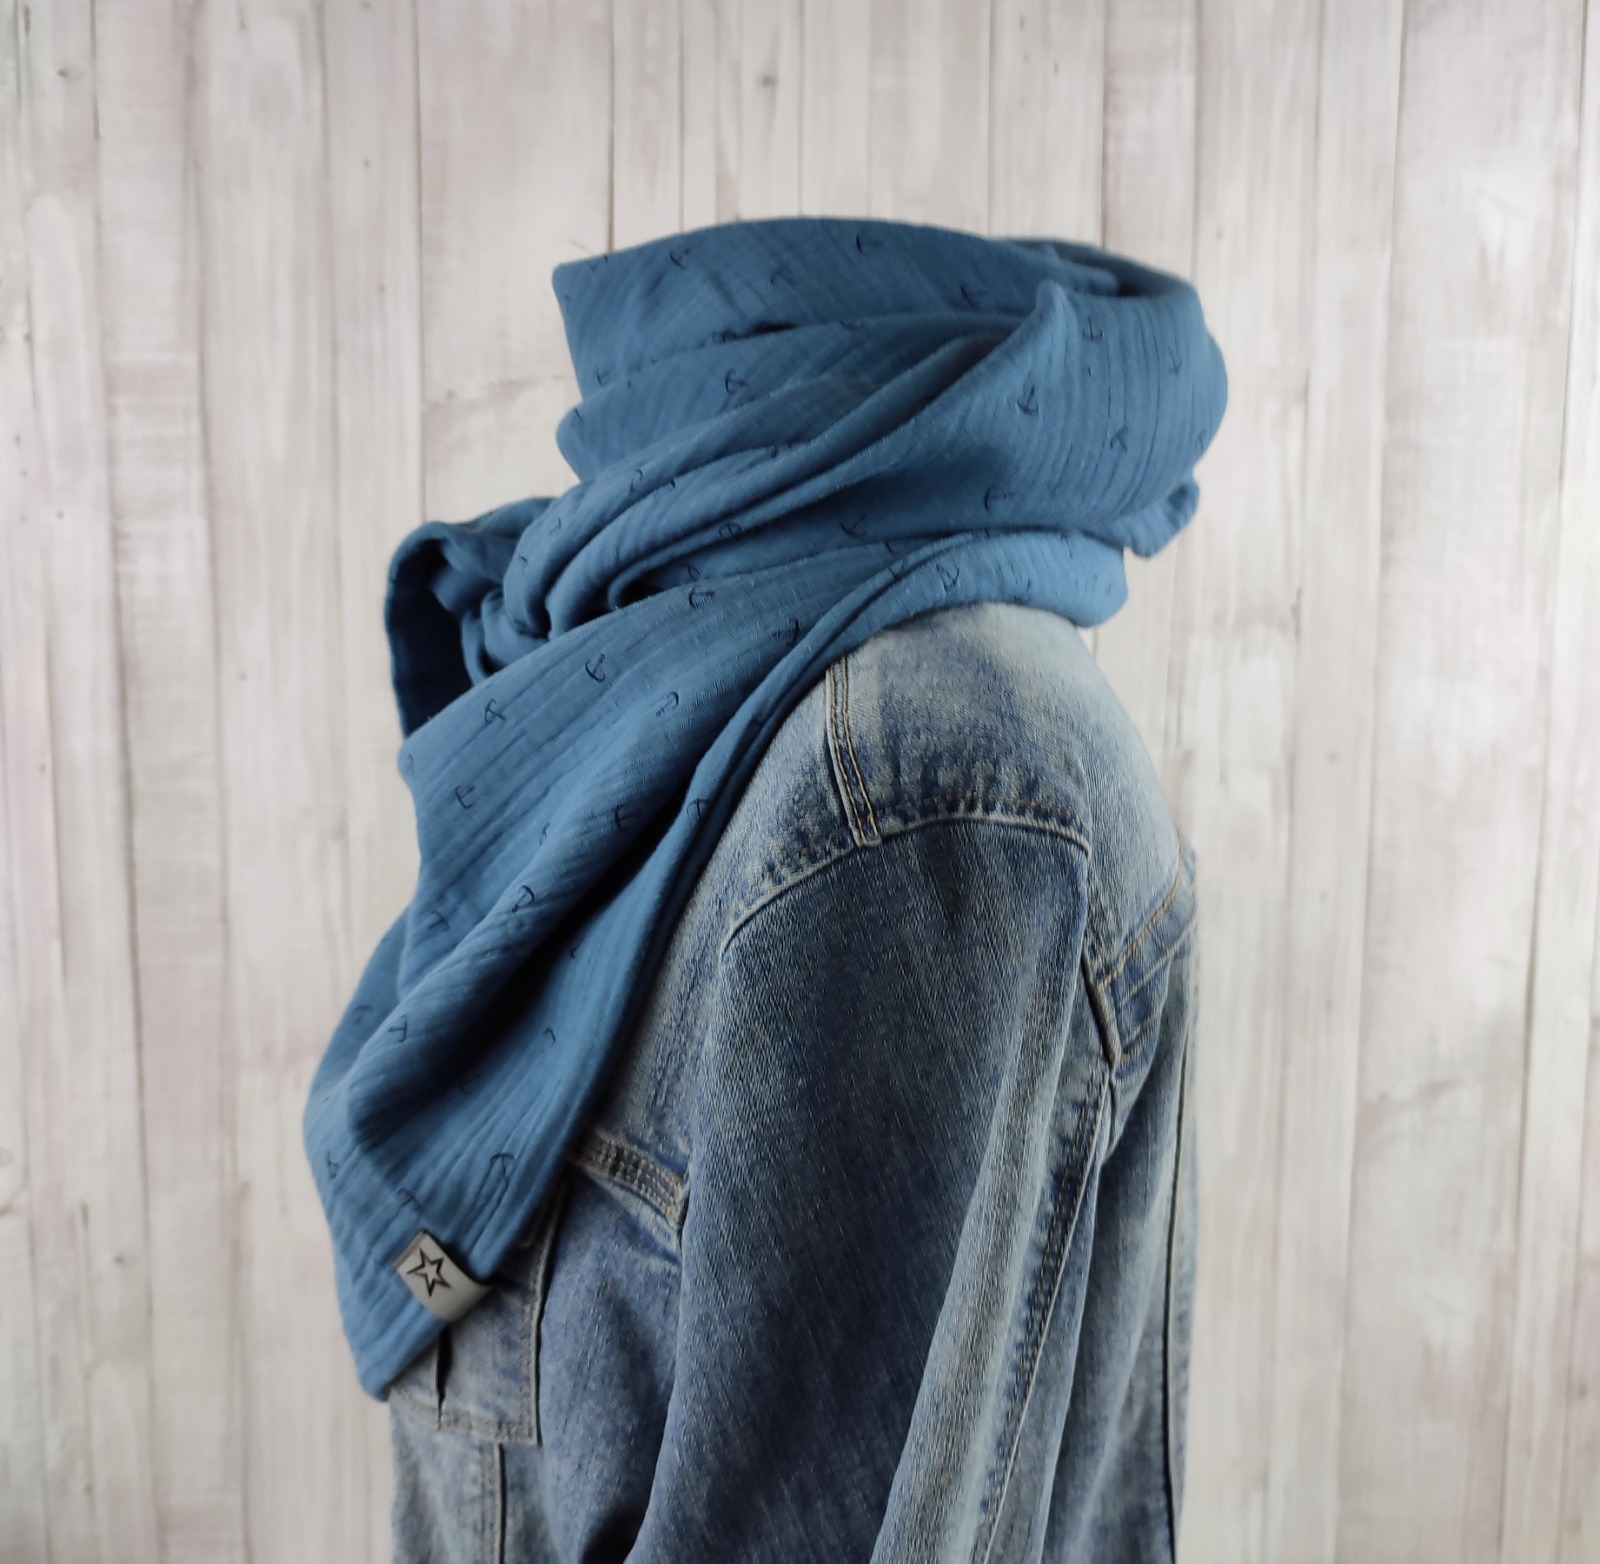 Tuch Anker - Dreieckstuch Musselin Damen - Schal jeansblau mit Ankern in dunkelblau - XXL Tuch aus